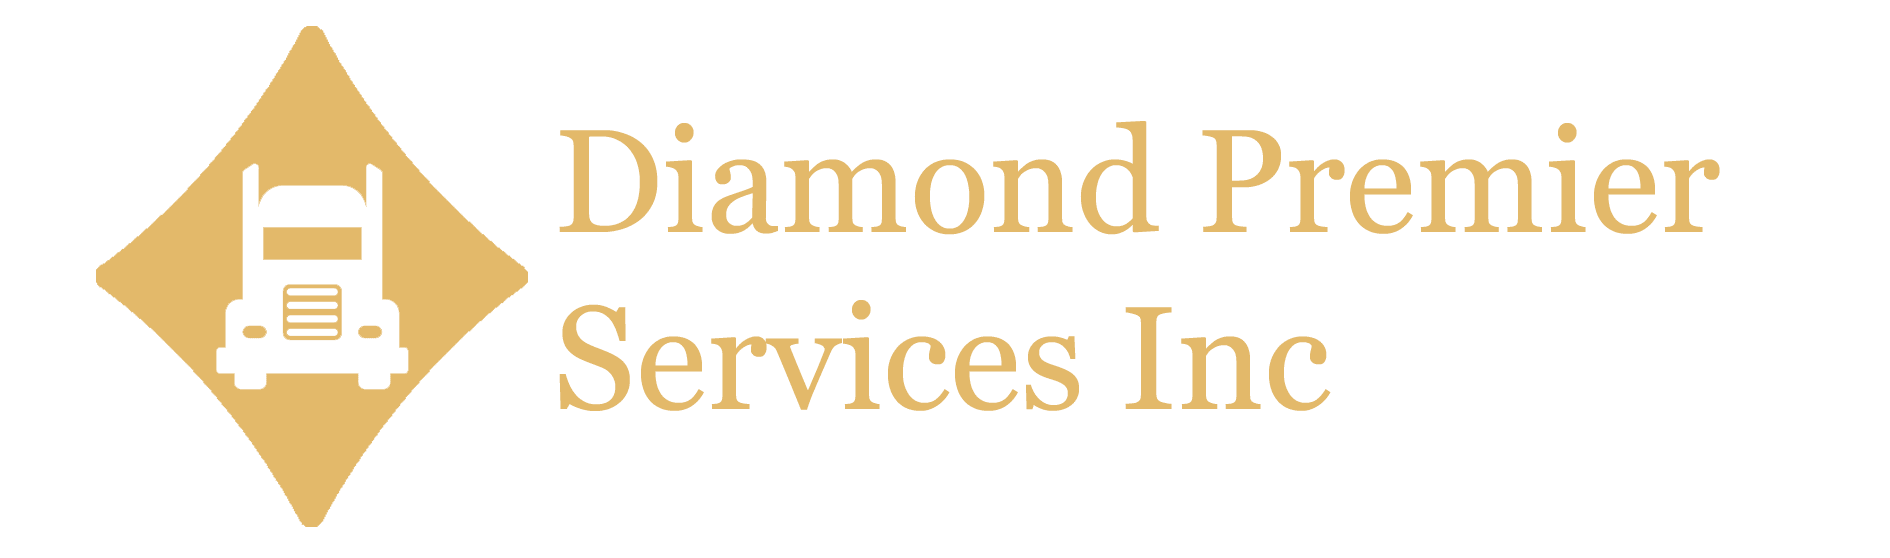 Diamond Premier Services Inc